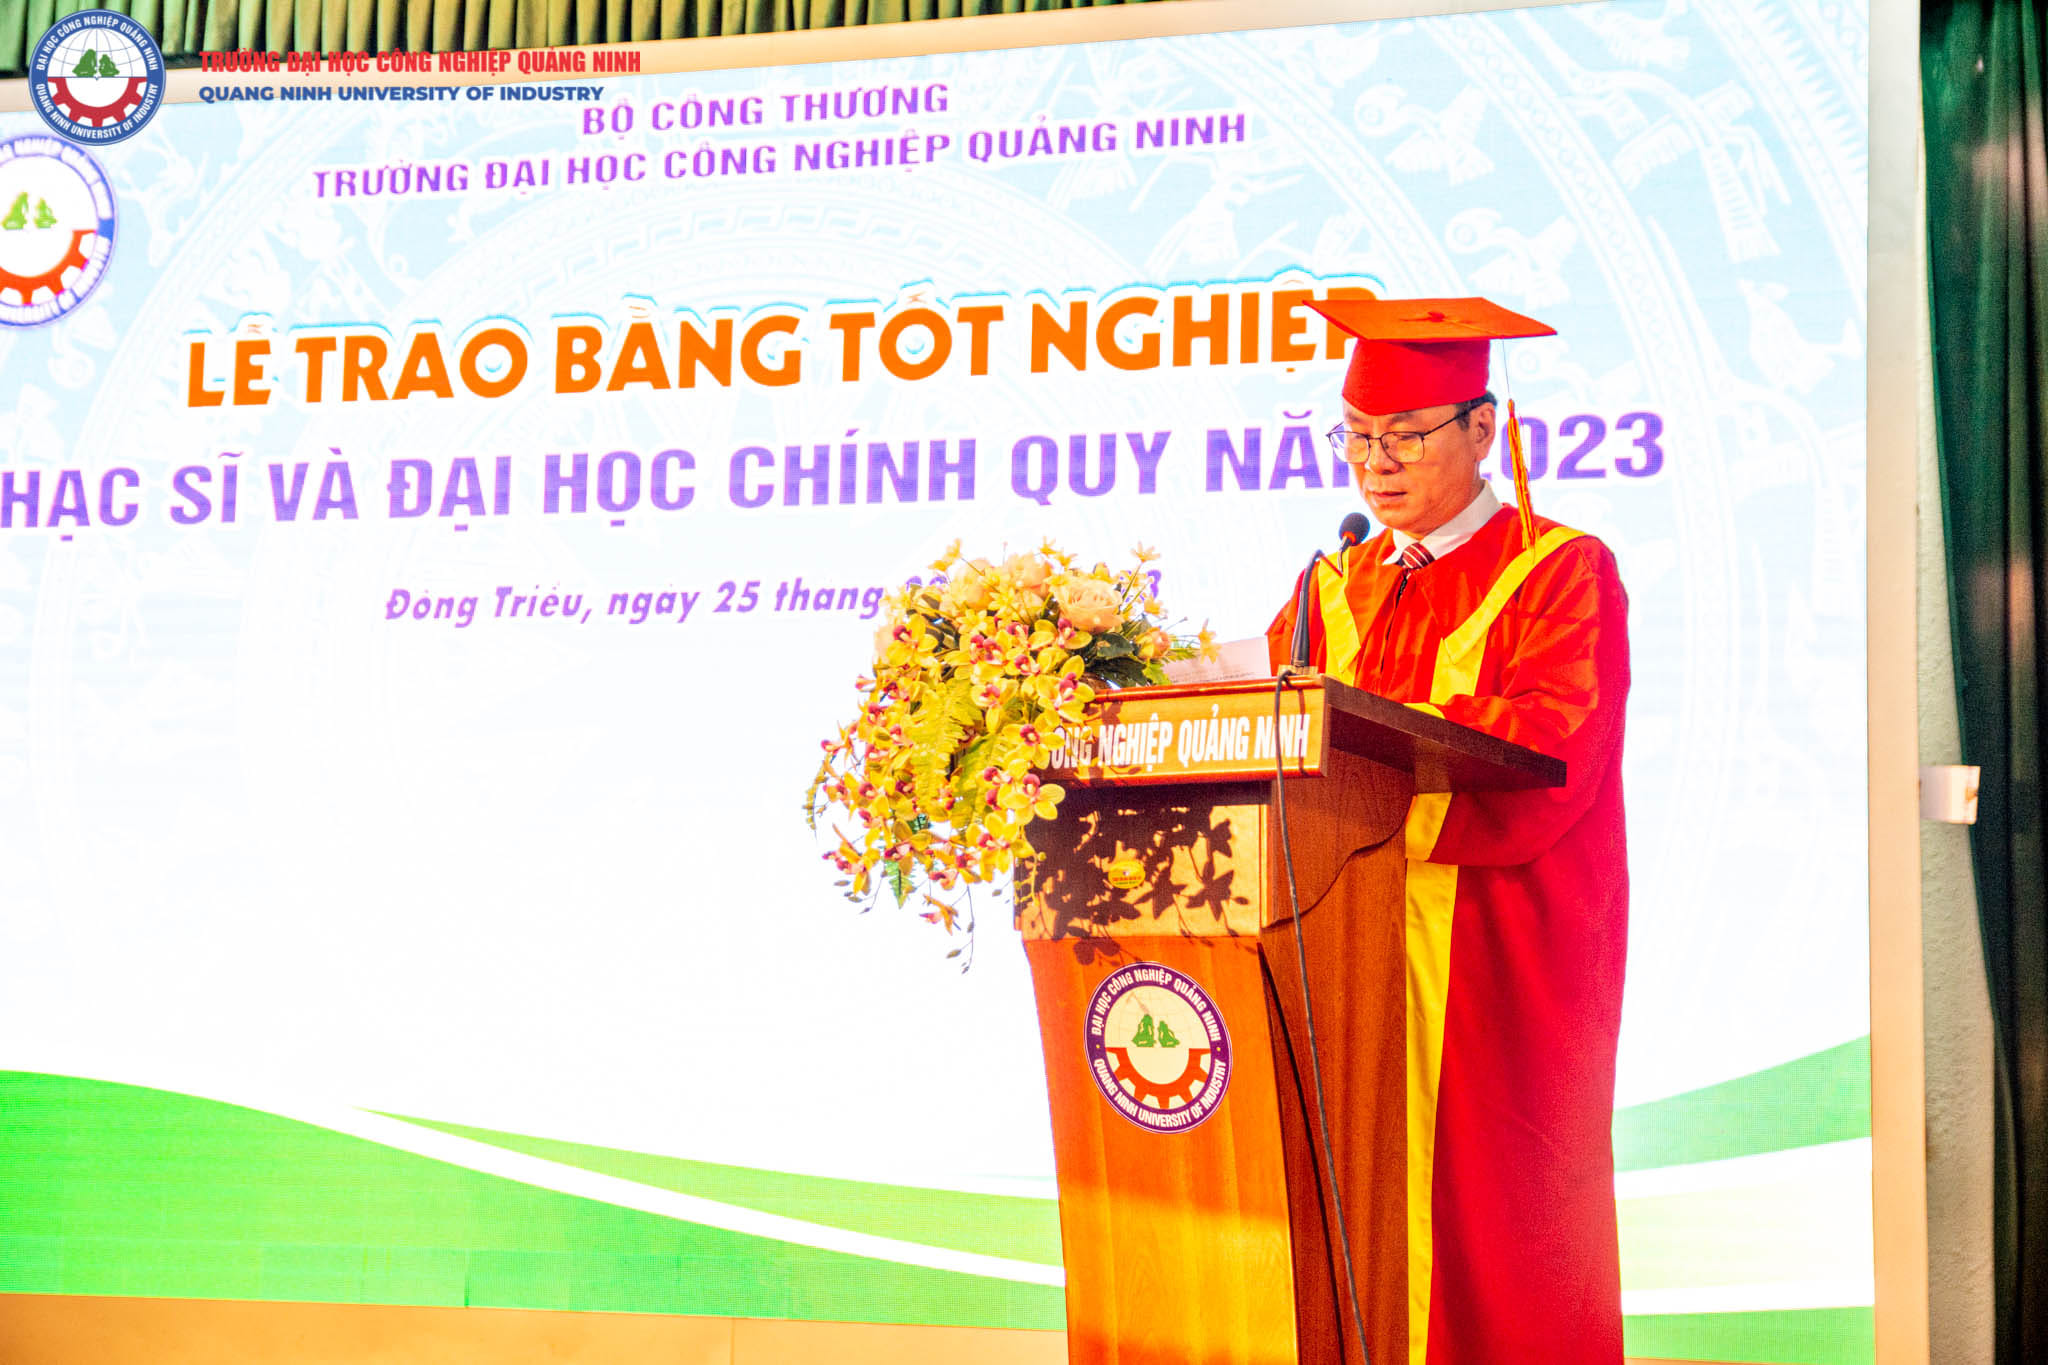 TS. Hoàng Hùng Thắng - Bí thư Đảng ủy, Hiệu trưởng nhà trường phát biểu tại buổi lễ